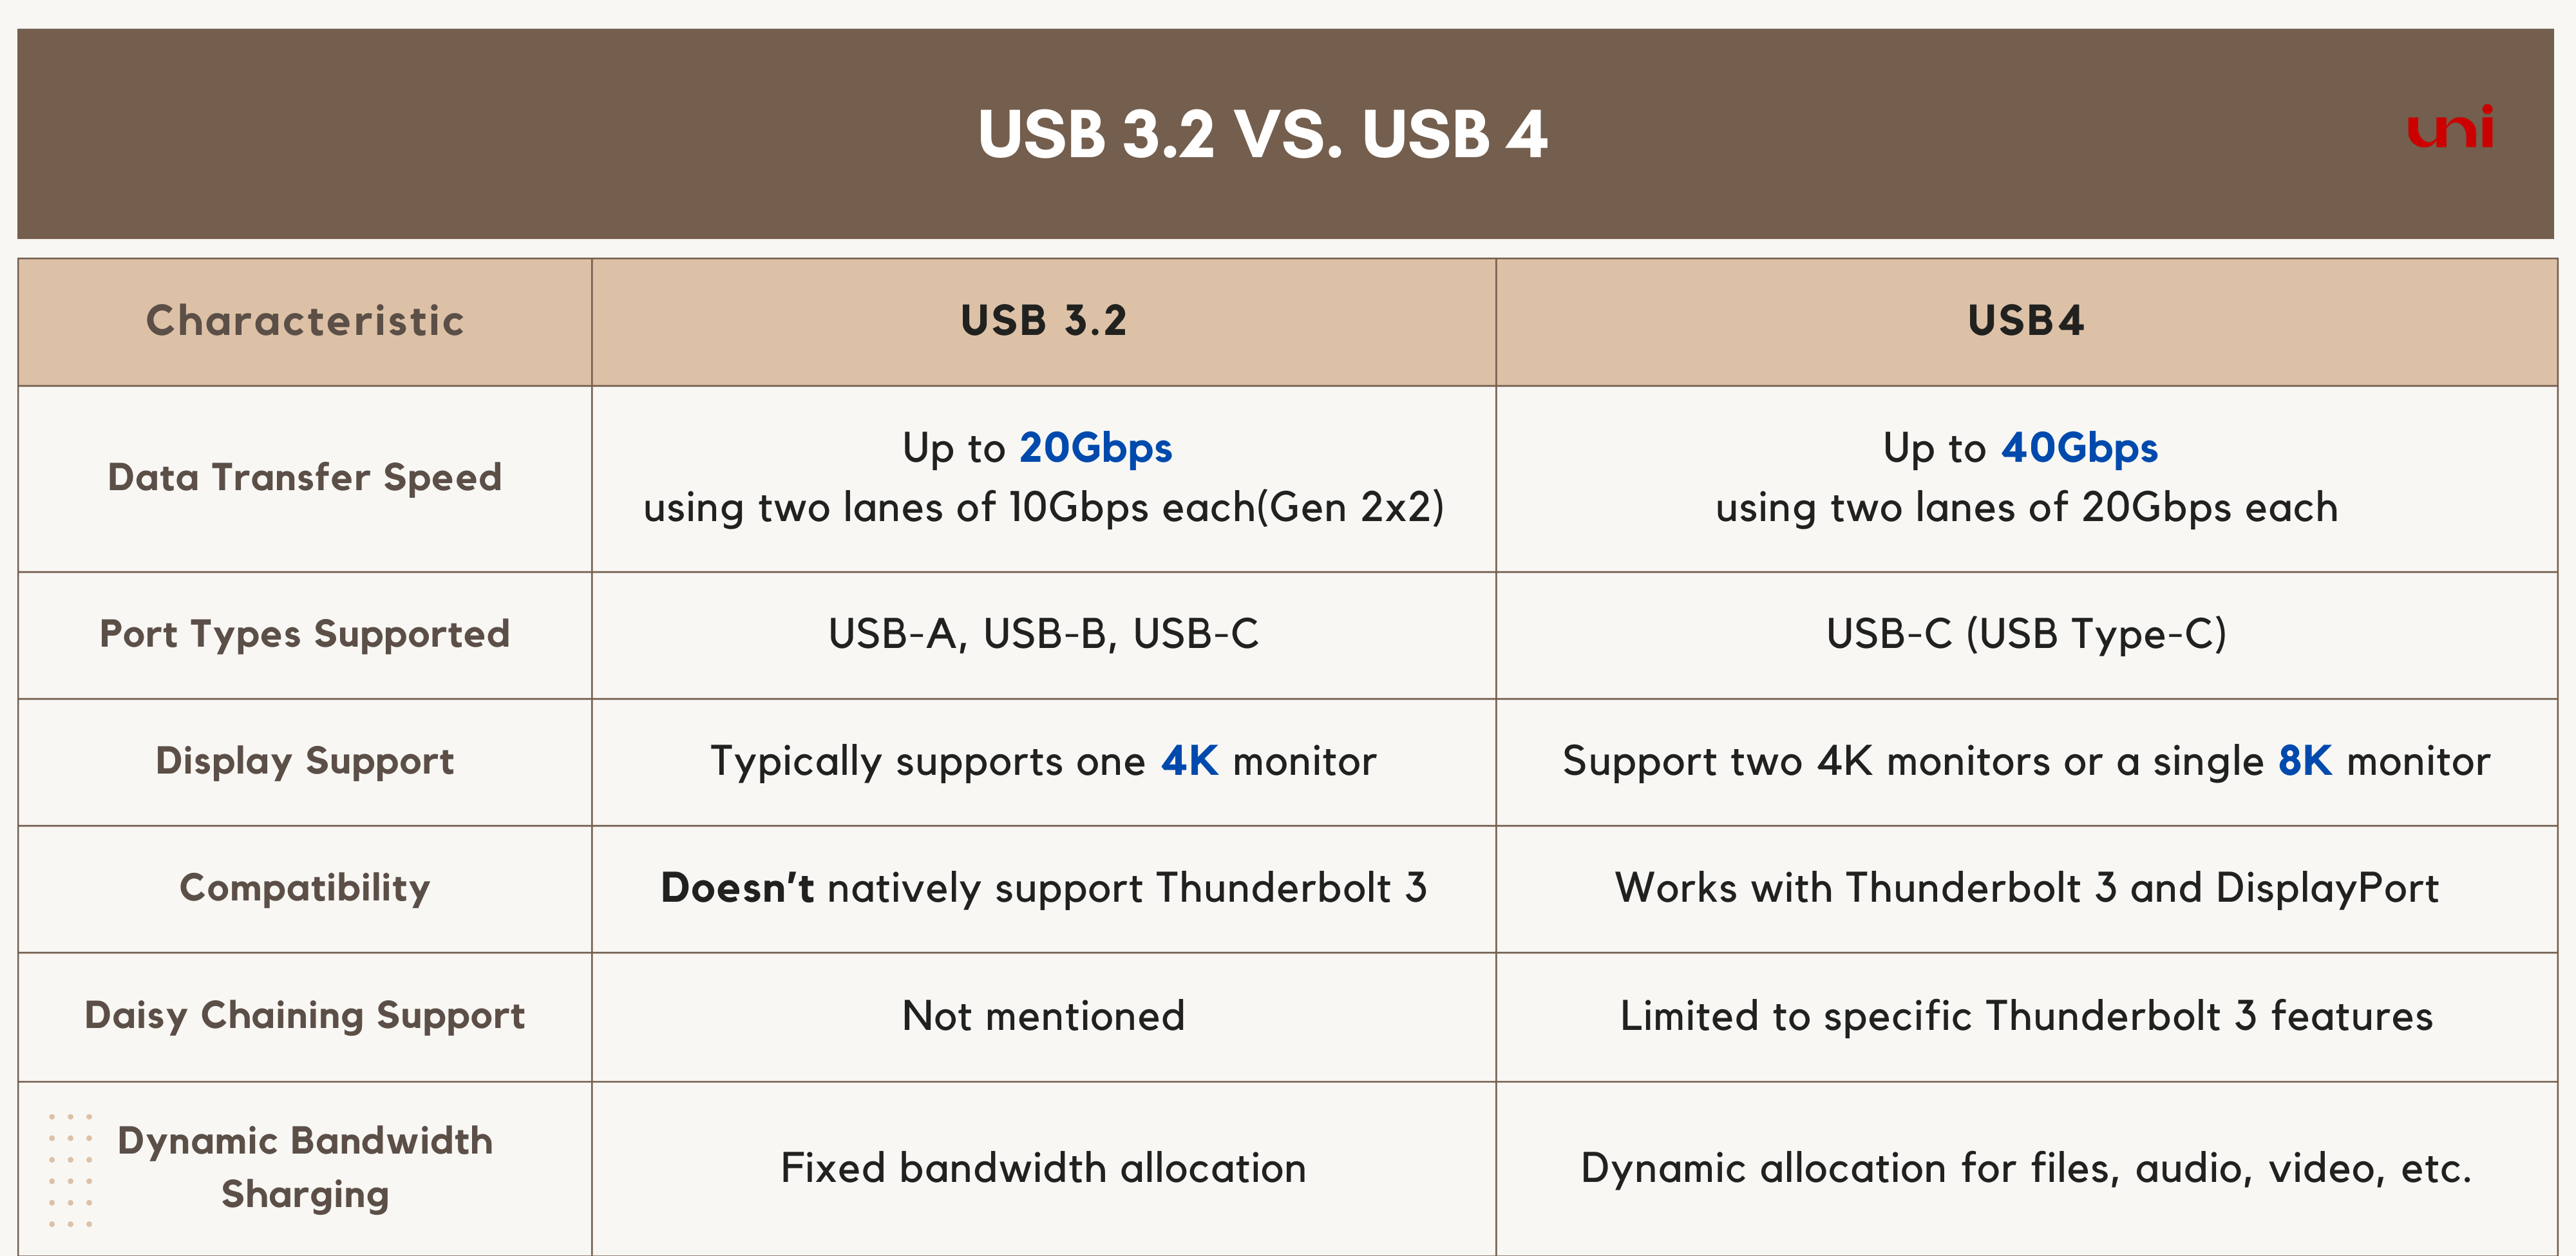 USB 3.2 Vs. USB 4